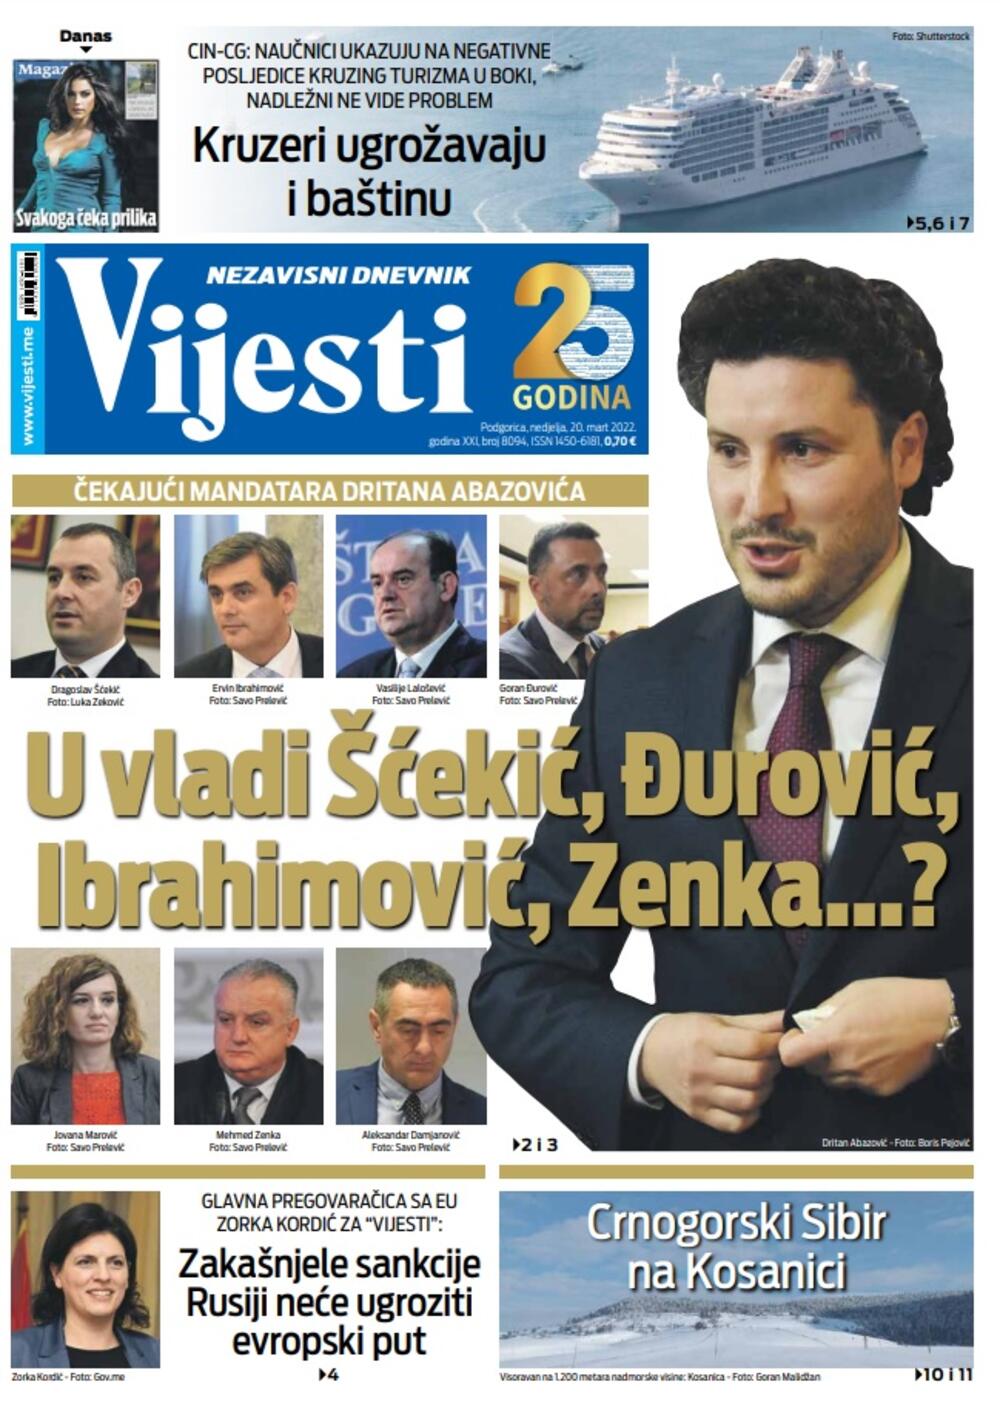 Naslovna strana "Vijesti" za 20. mart 2022., Foto: Vijesti